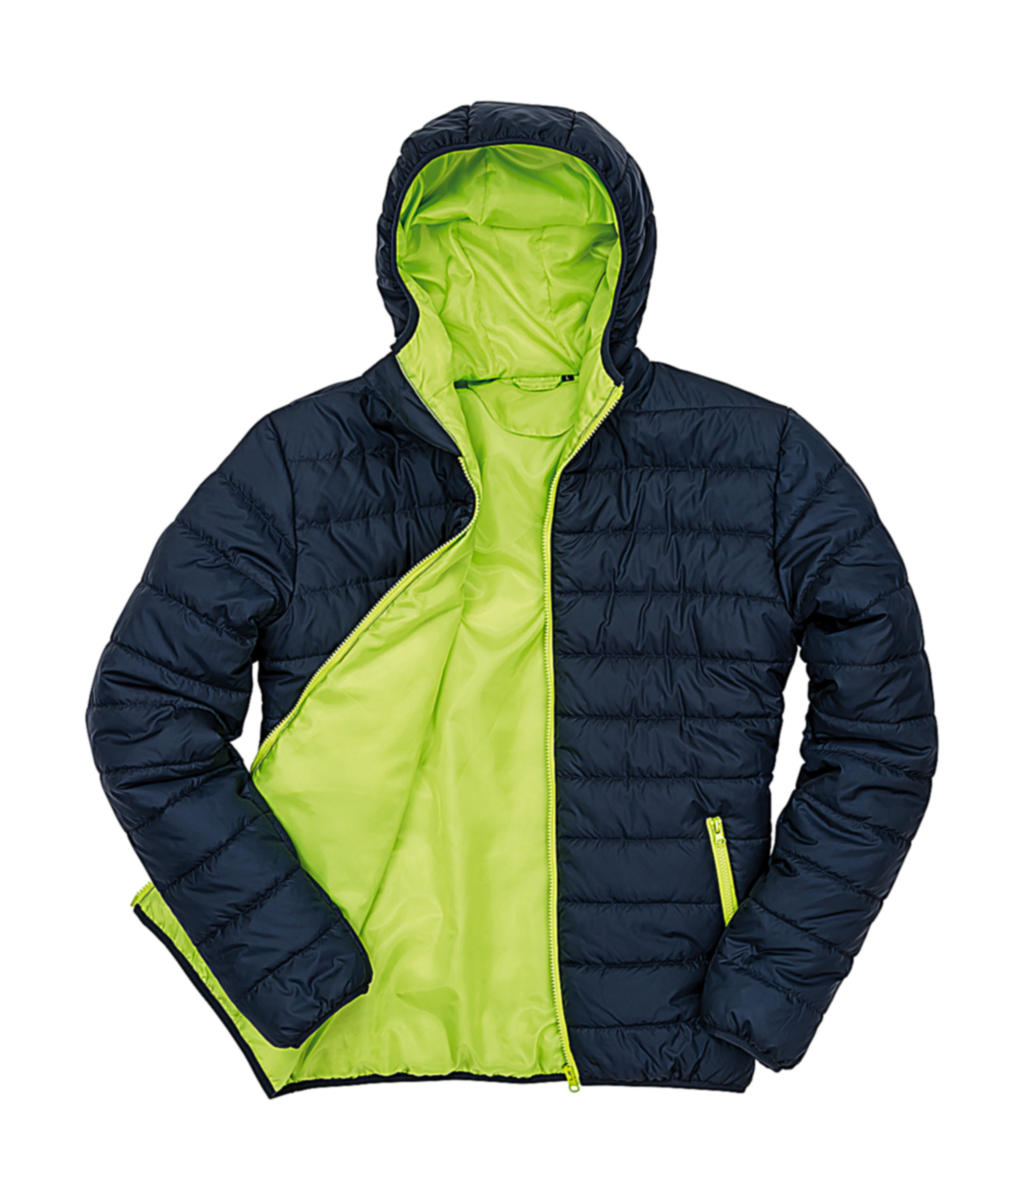 Pánská polstrovaná bunda Result s kapucí Velikost: 3XL, Barva: Navy/Lime